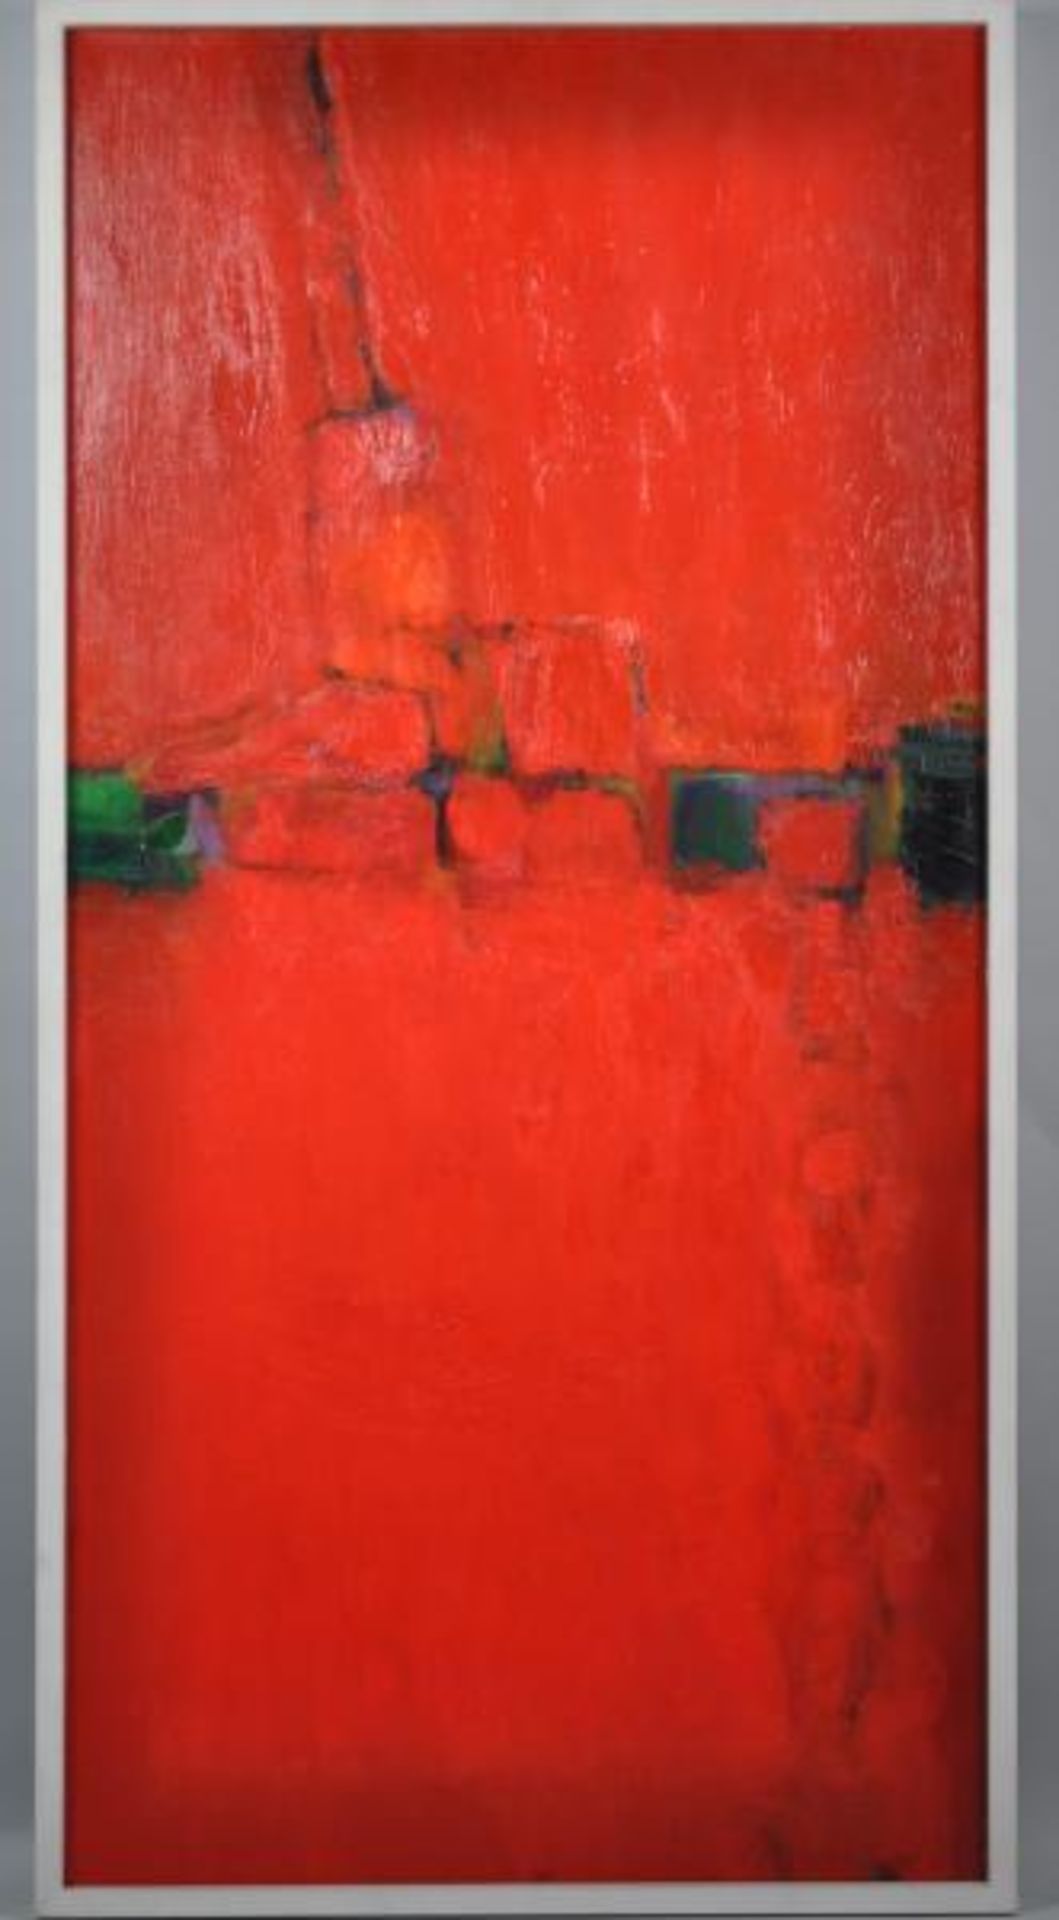 DÖRFLINGER Johannes (1941 Konstanz) "Abstrakt in Rot", mit kleinen Elementen, Öl auf Leinwand, - Bild 2 aus 3